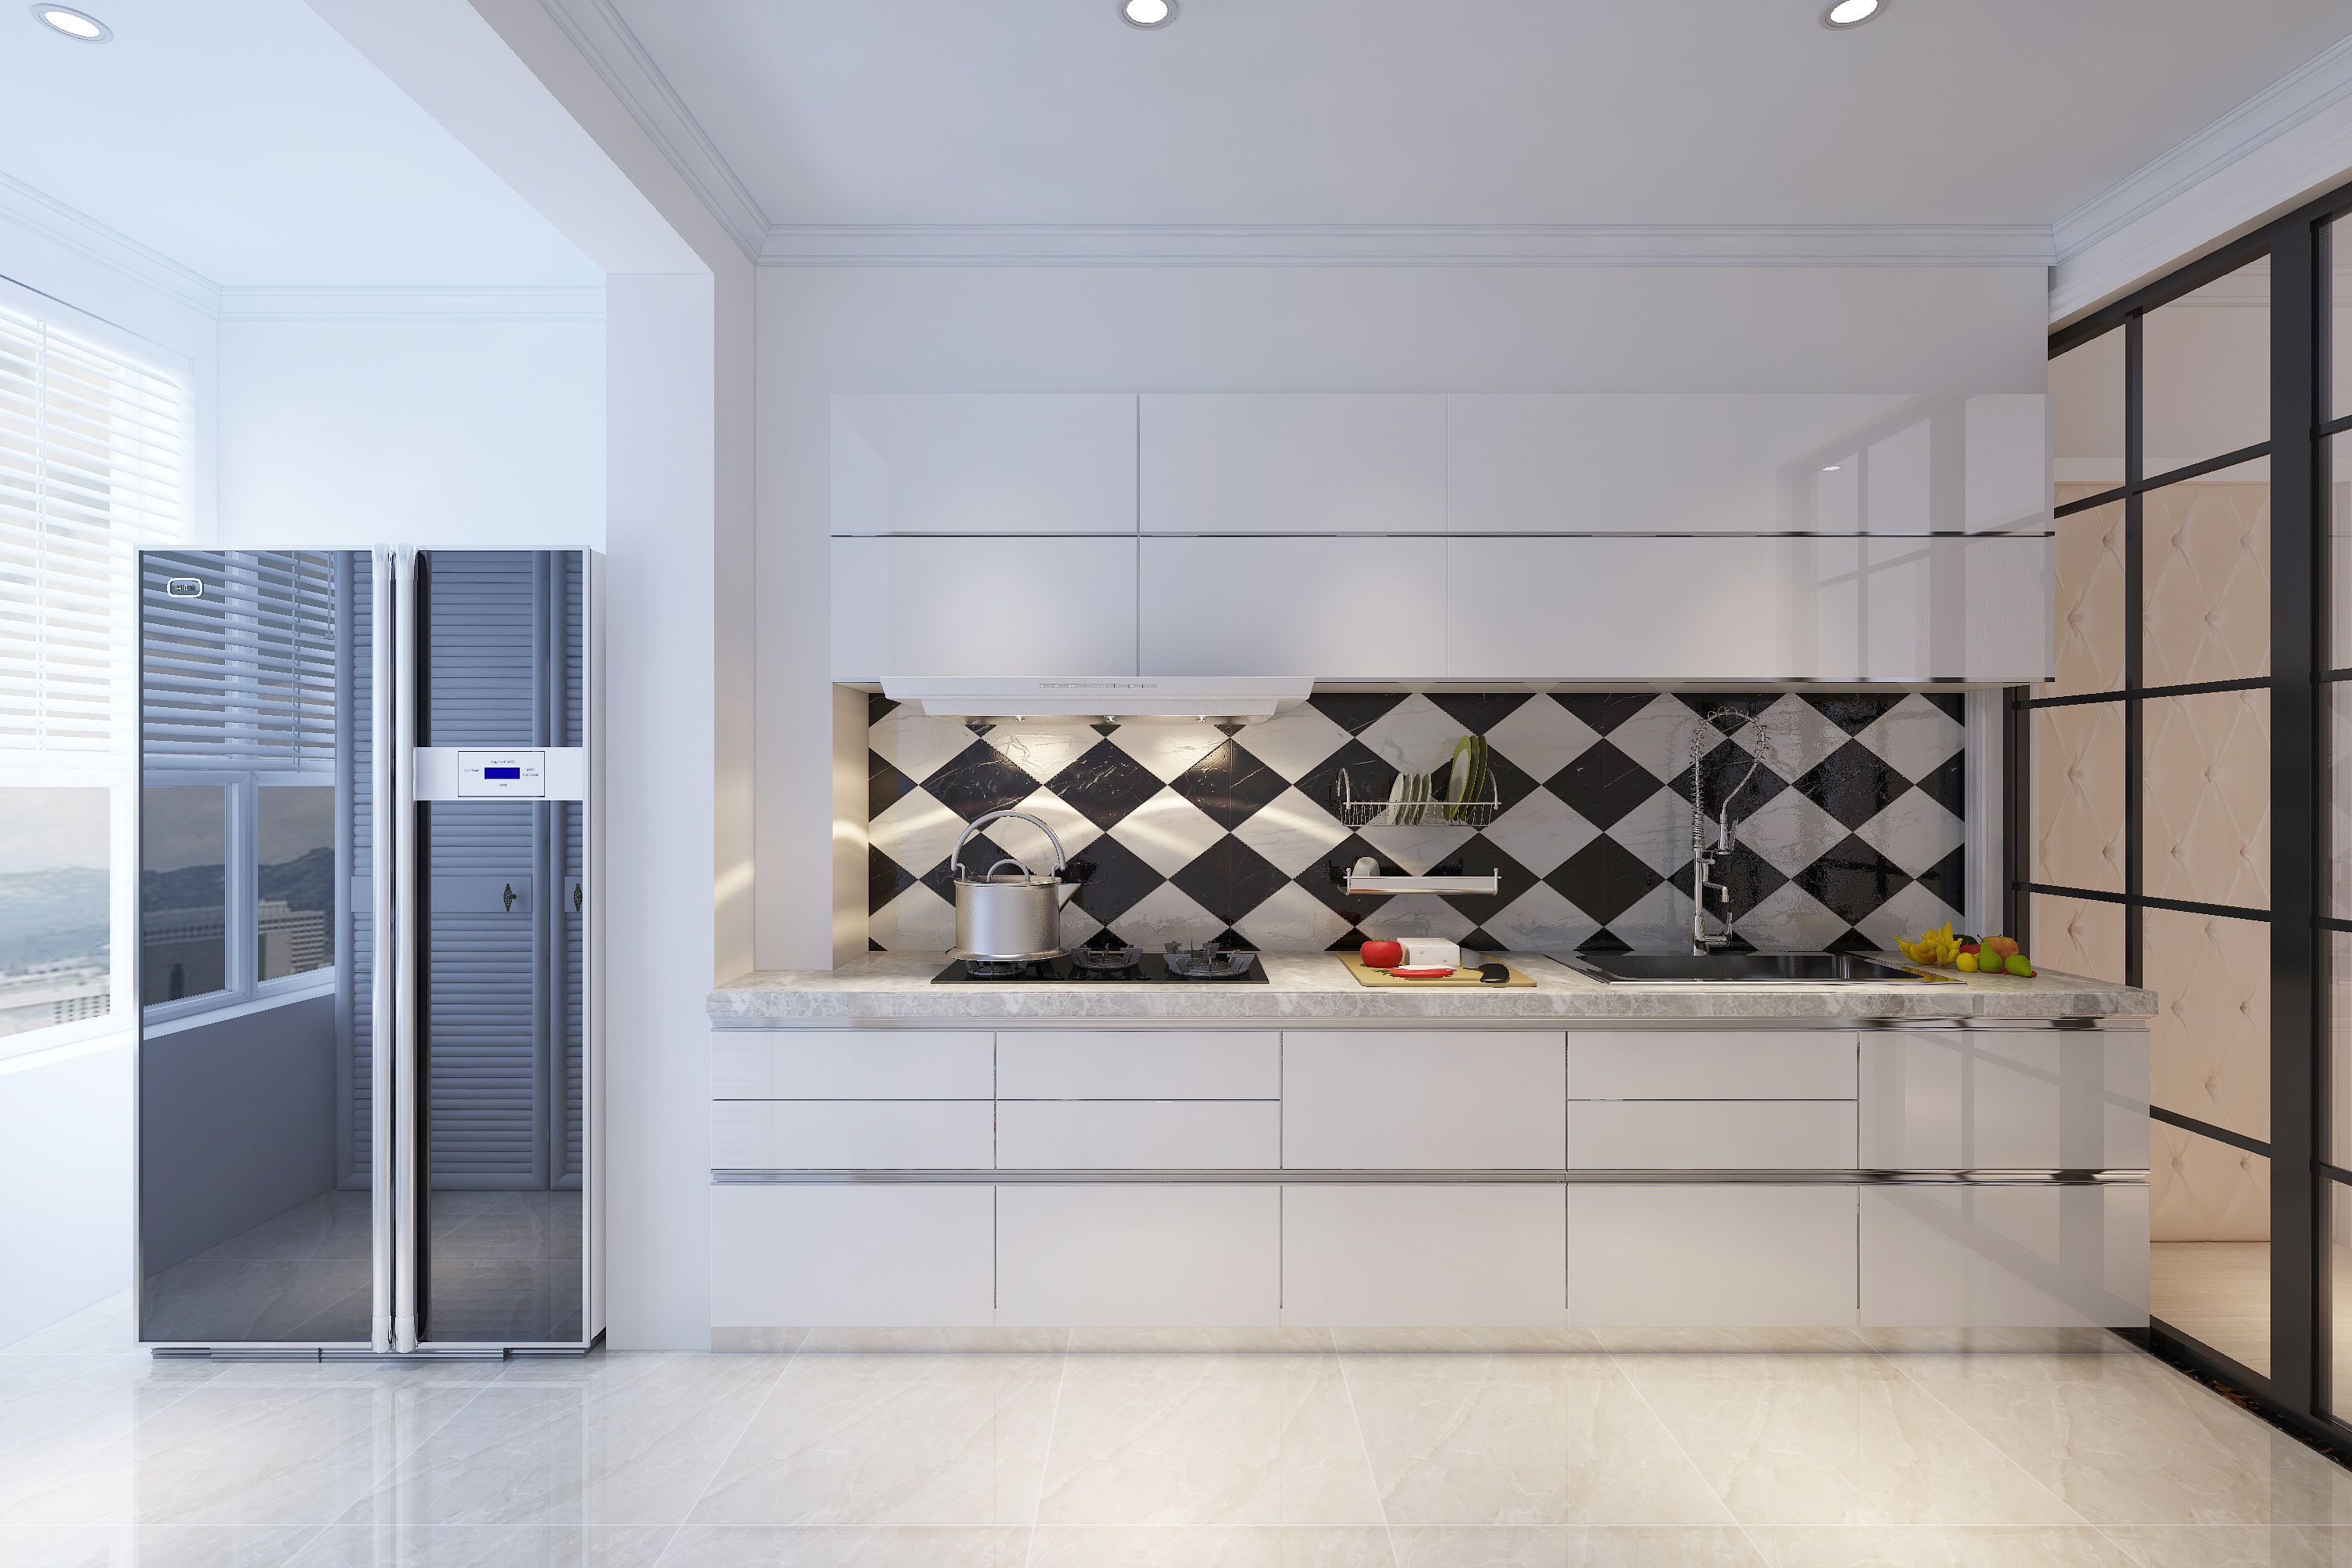 11种墙面贴砖设计,让你的厨房颜值飙升